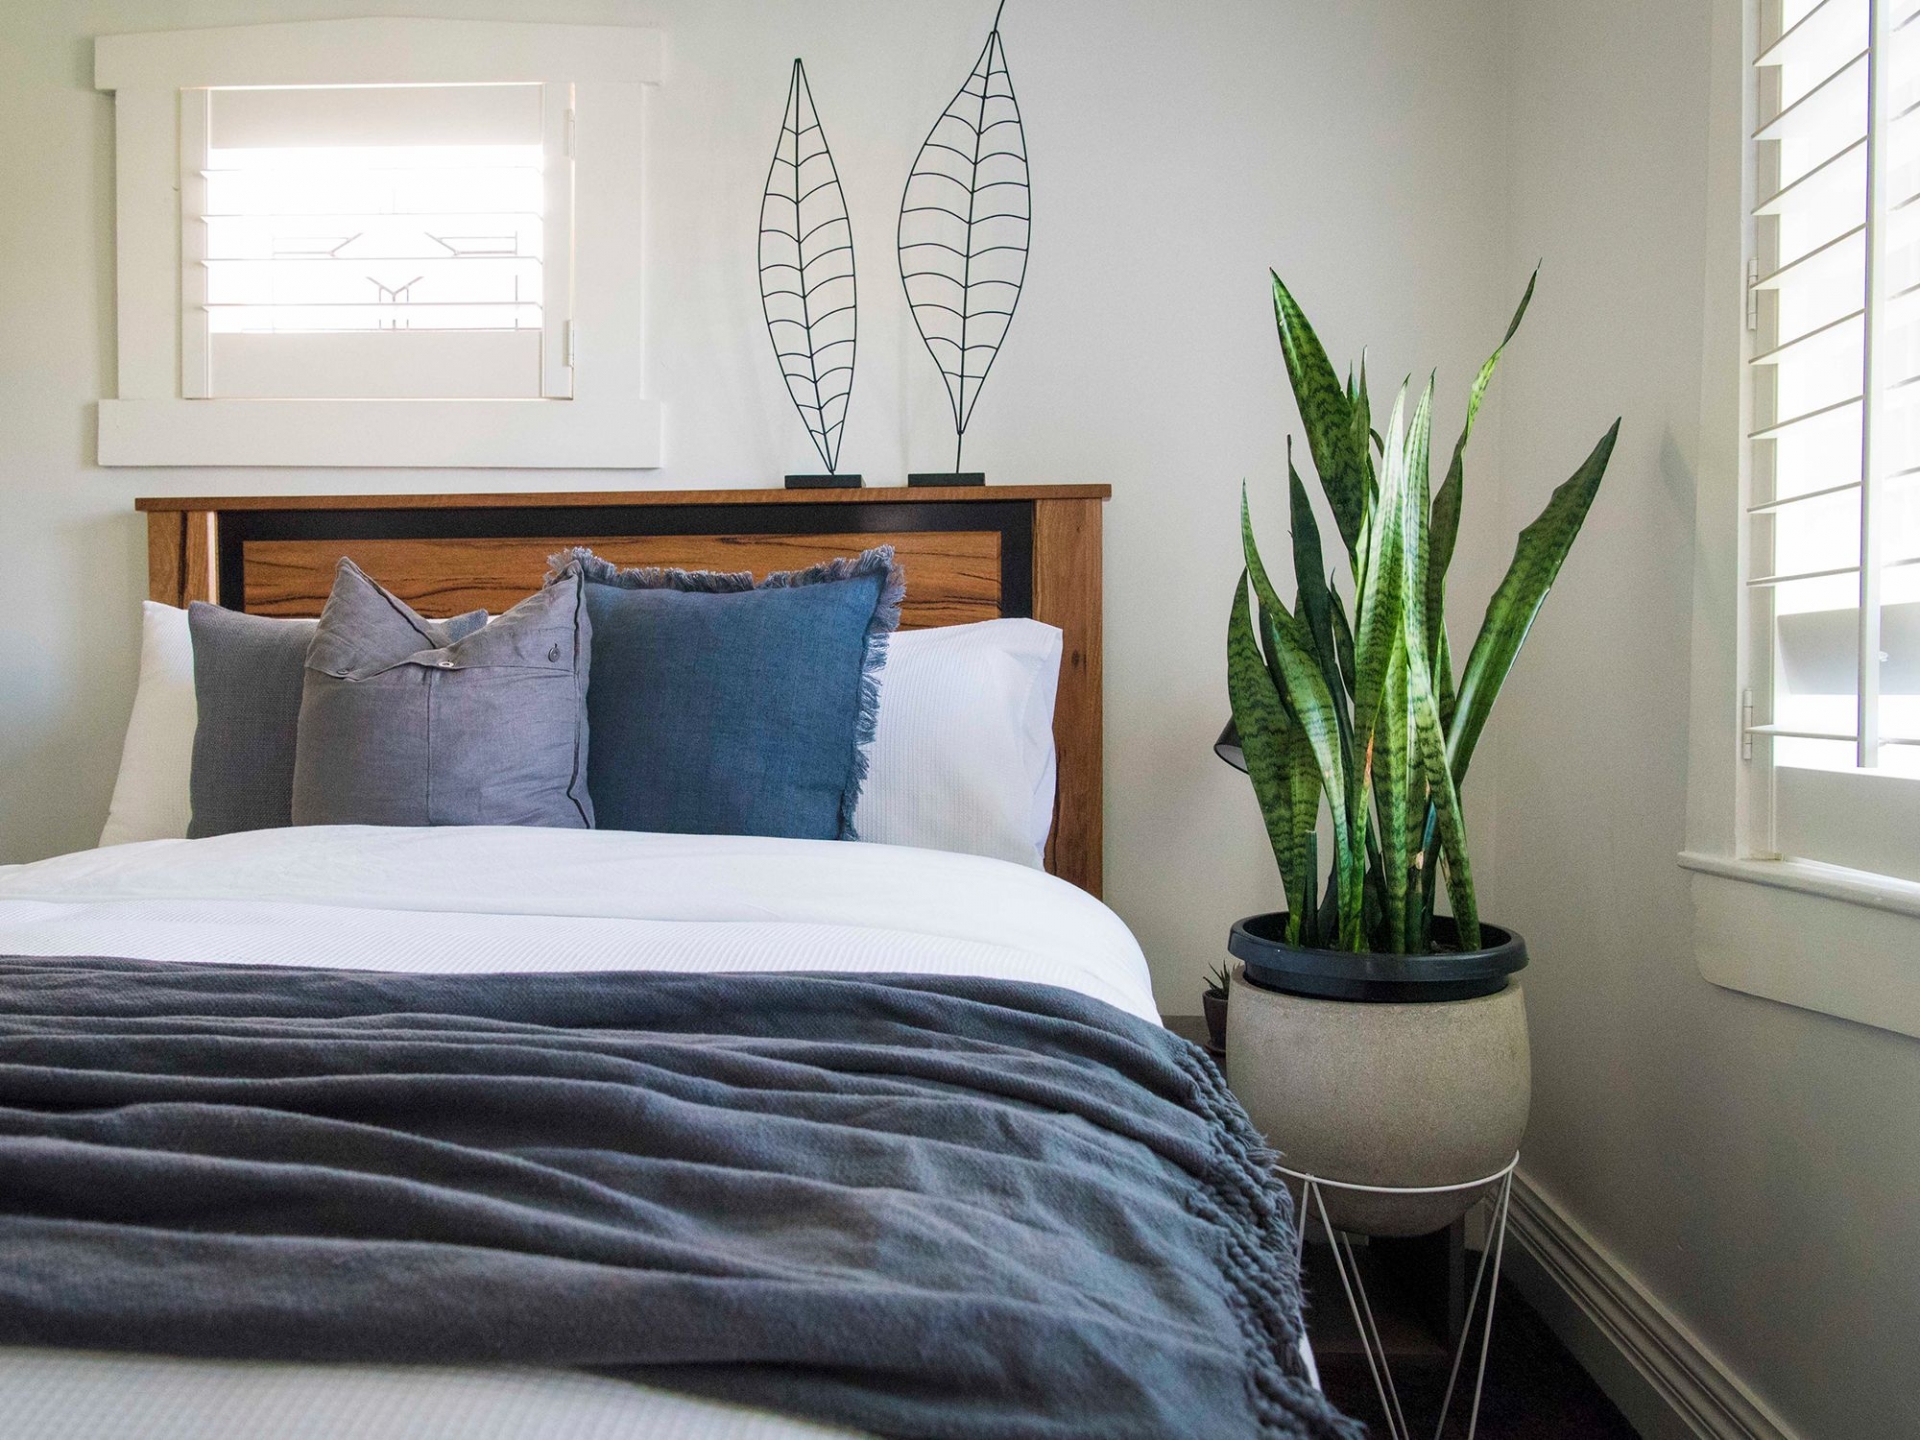 Cây lưỡi hổ là một loại cây trồng quen thuộc trong nhà, đặc biệt là trong phòng ngủ.